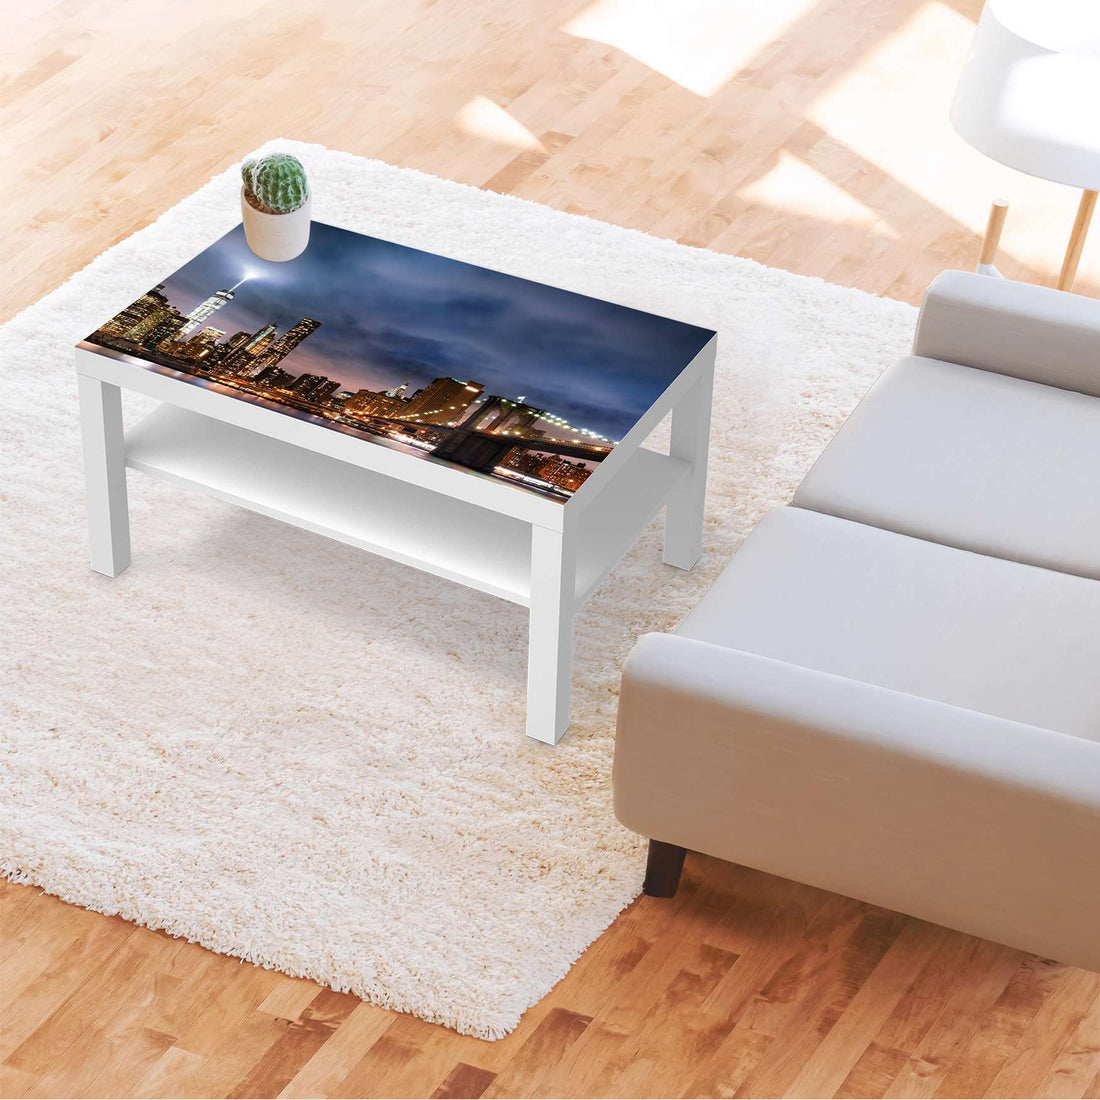 Möbelfolie Brooklyn Bridge - IKEA Lack Tisch 90x55 cm - Wohnzimmer